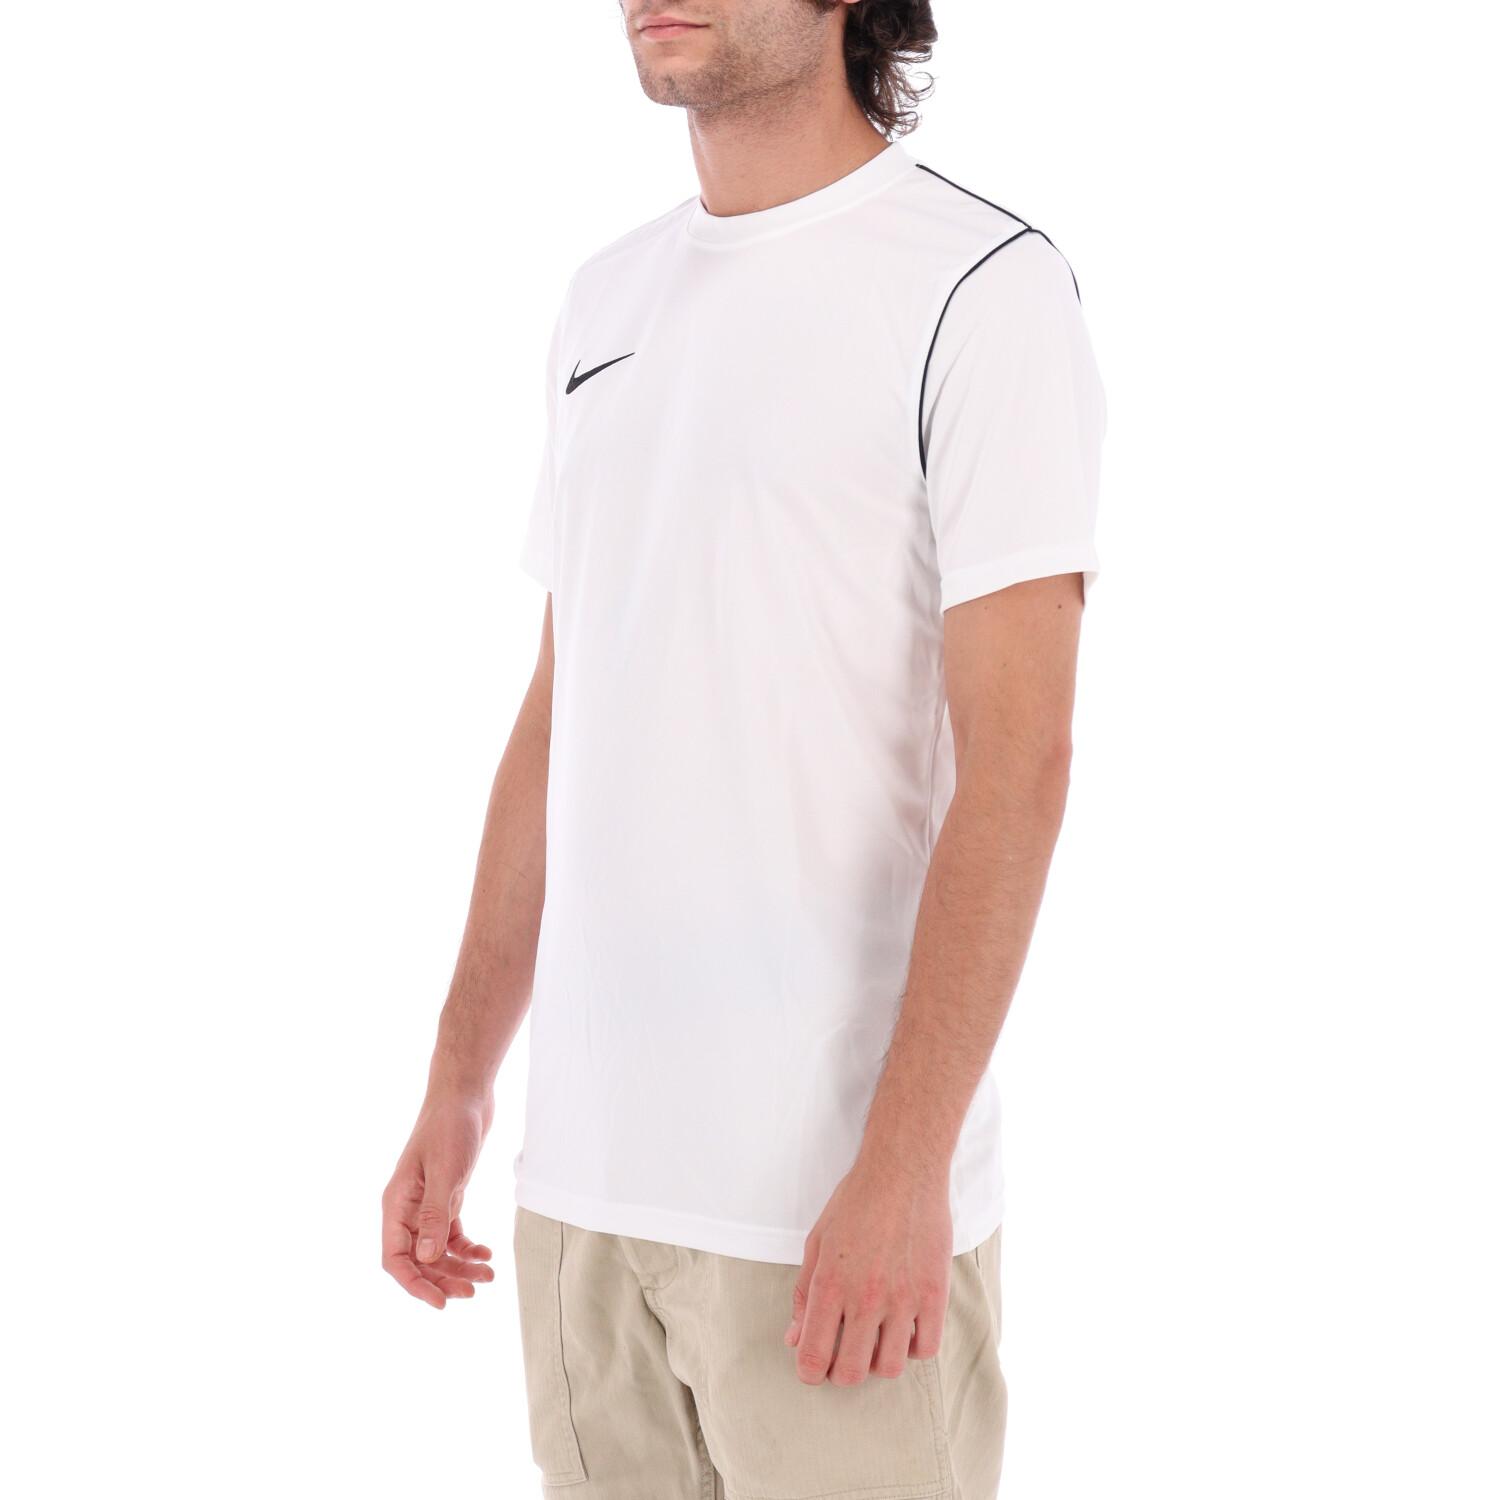 T-shirt Nike Dri-fit Park 20 White